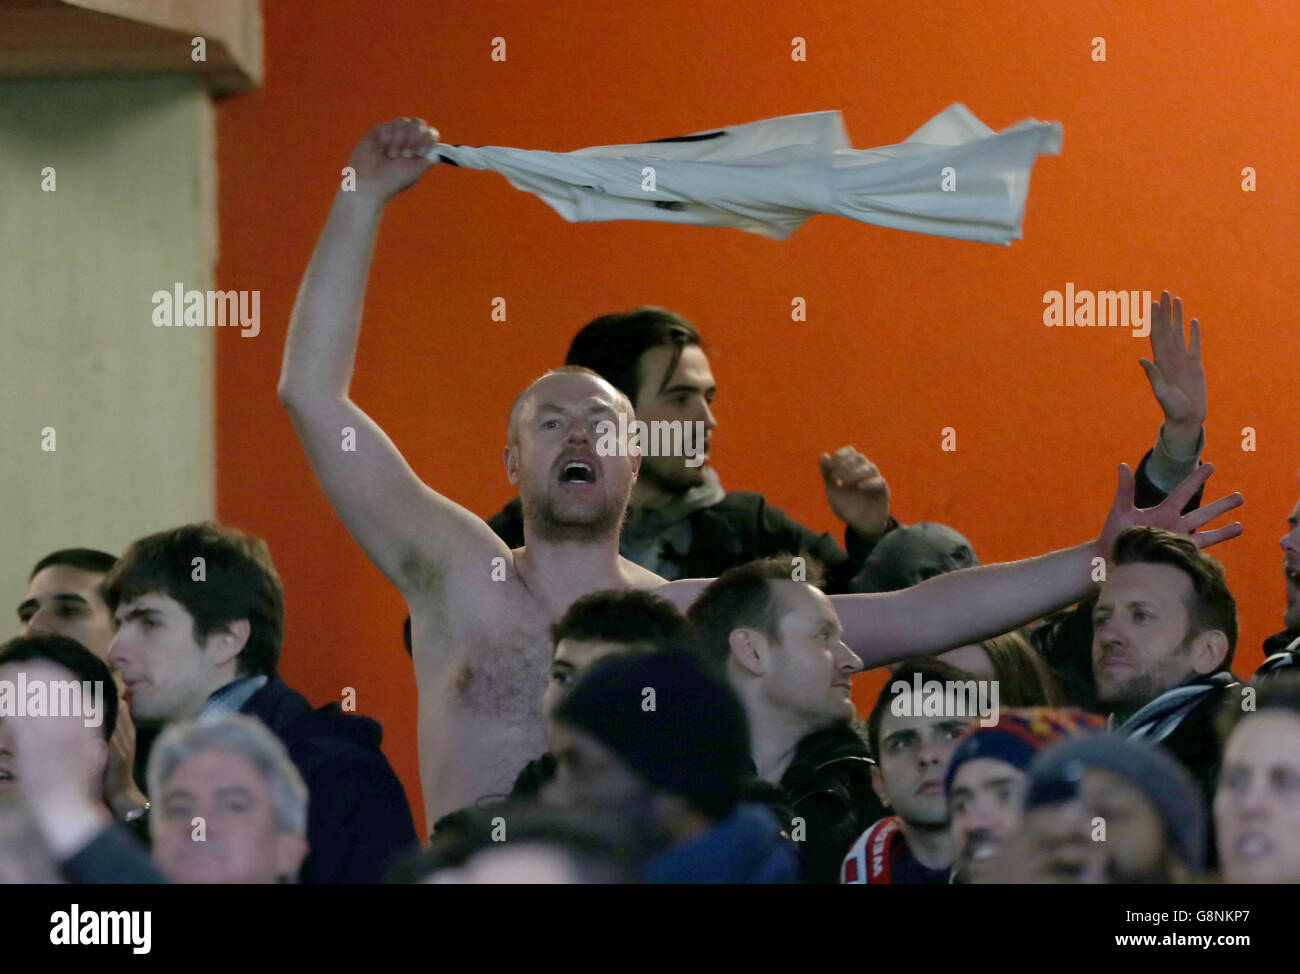 Arsenal / Swansea City - Barclays Premier League - Emirates Stadium. Un fan di Swansea City festeggia con la sua camicia fuori dopo il fischio finale Foto Stock